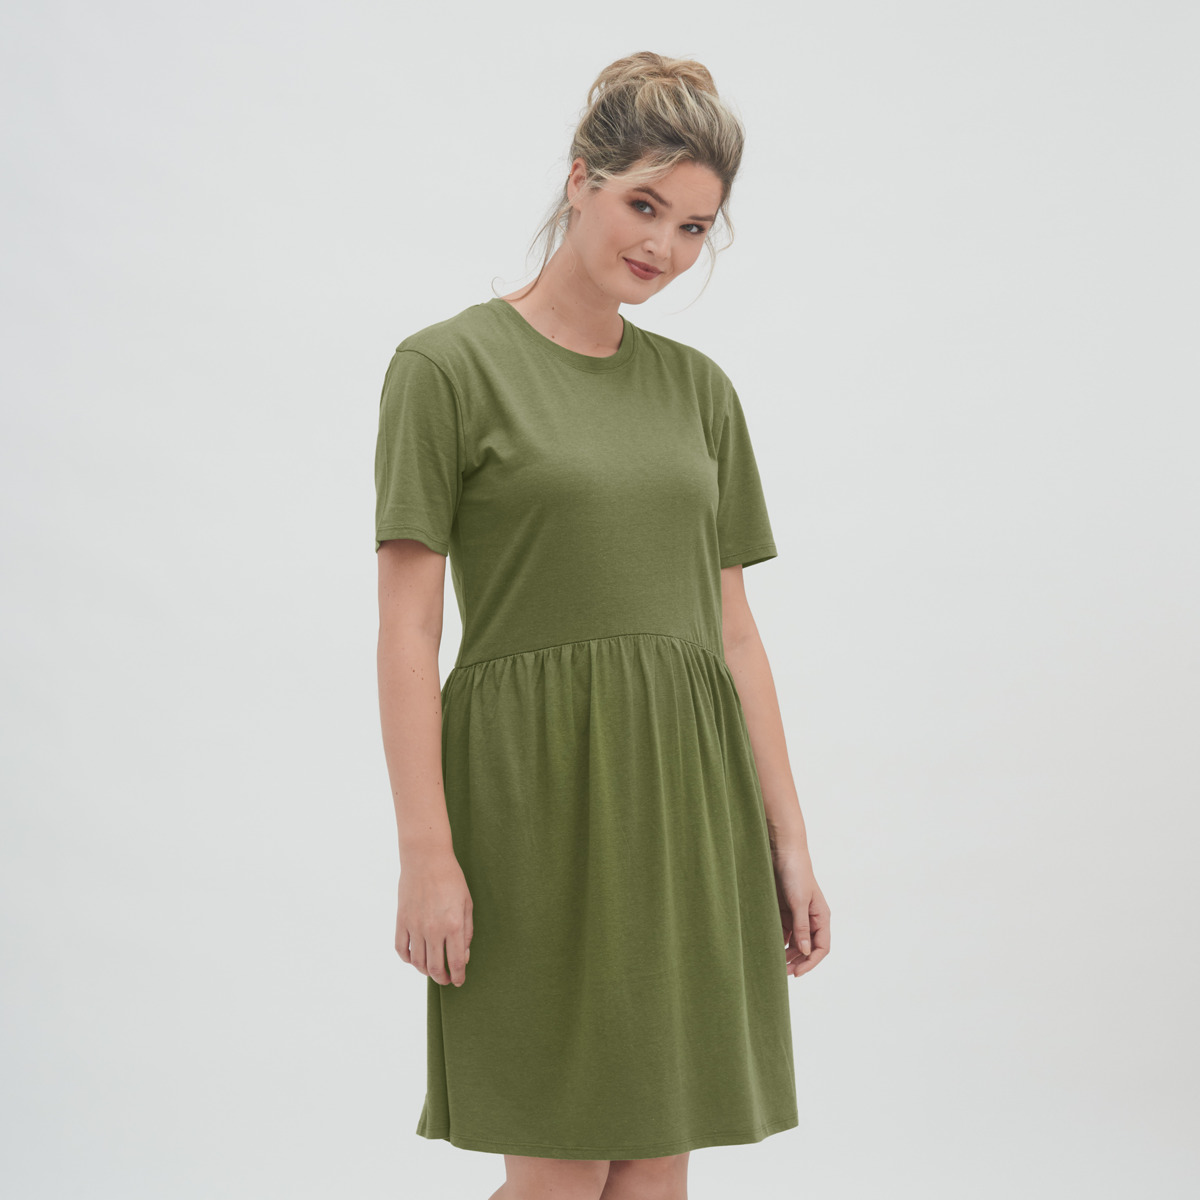 Green Women Dress